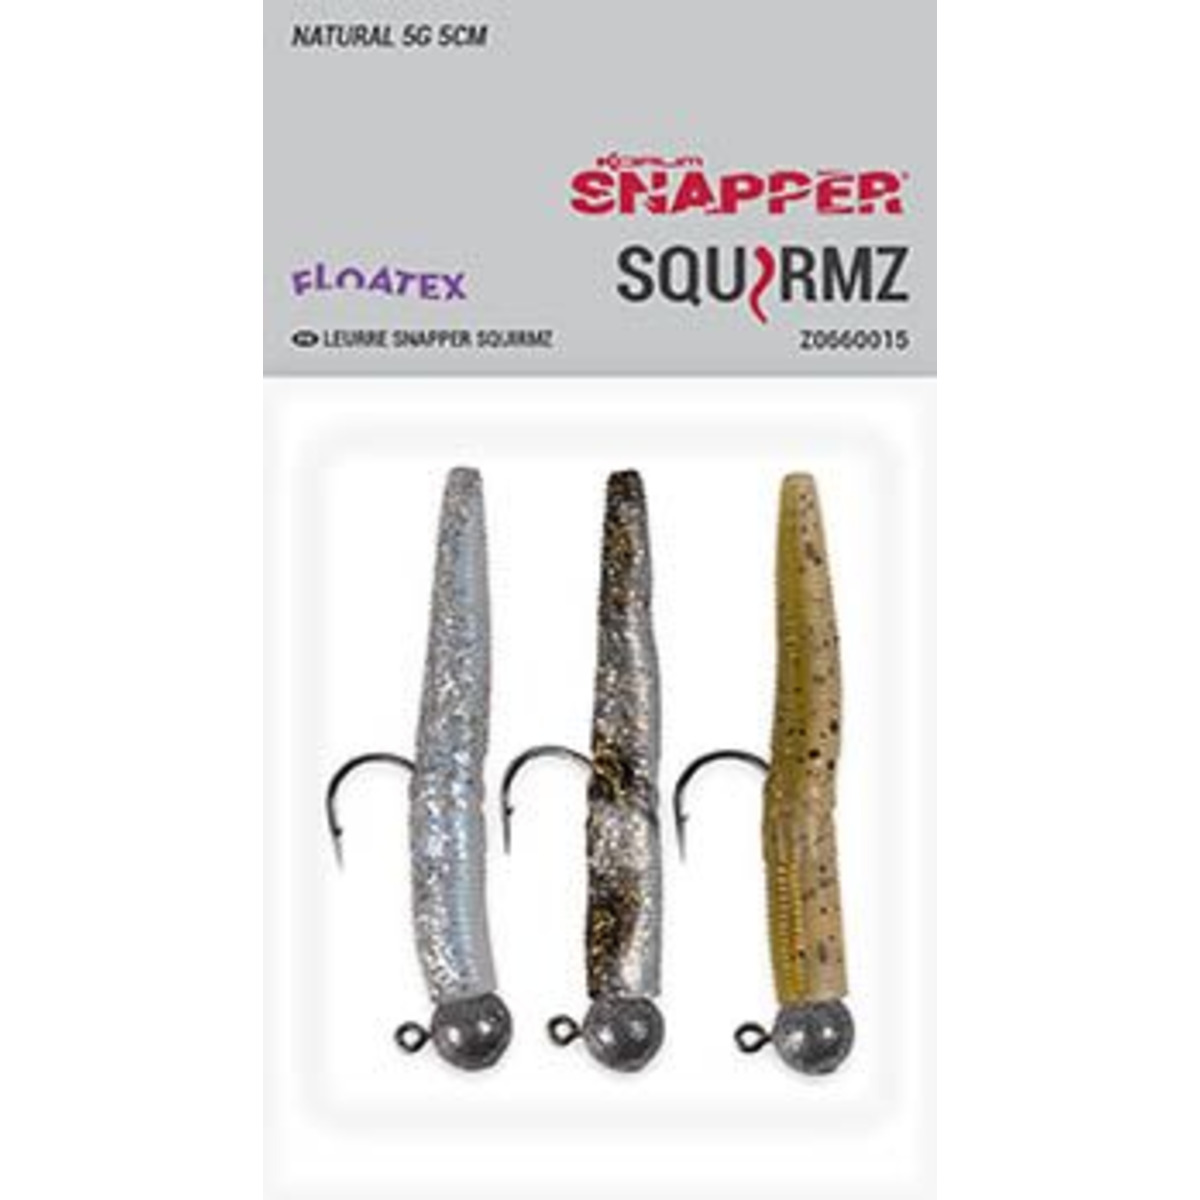 Korum Snapper  Squirmz - 5 cm NATURAL